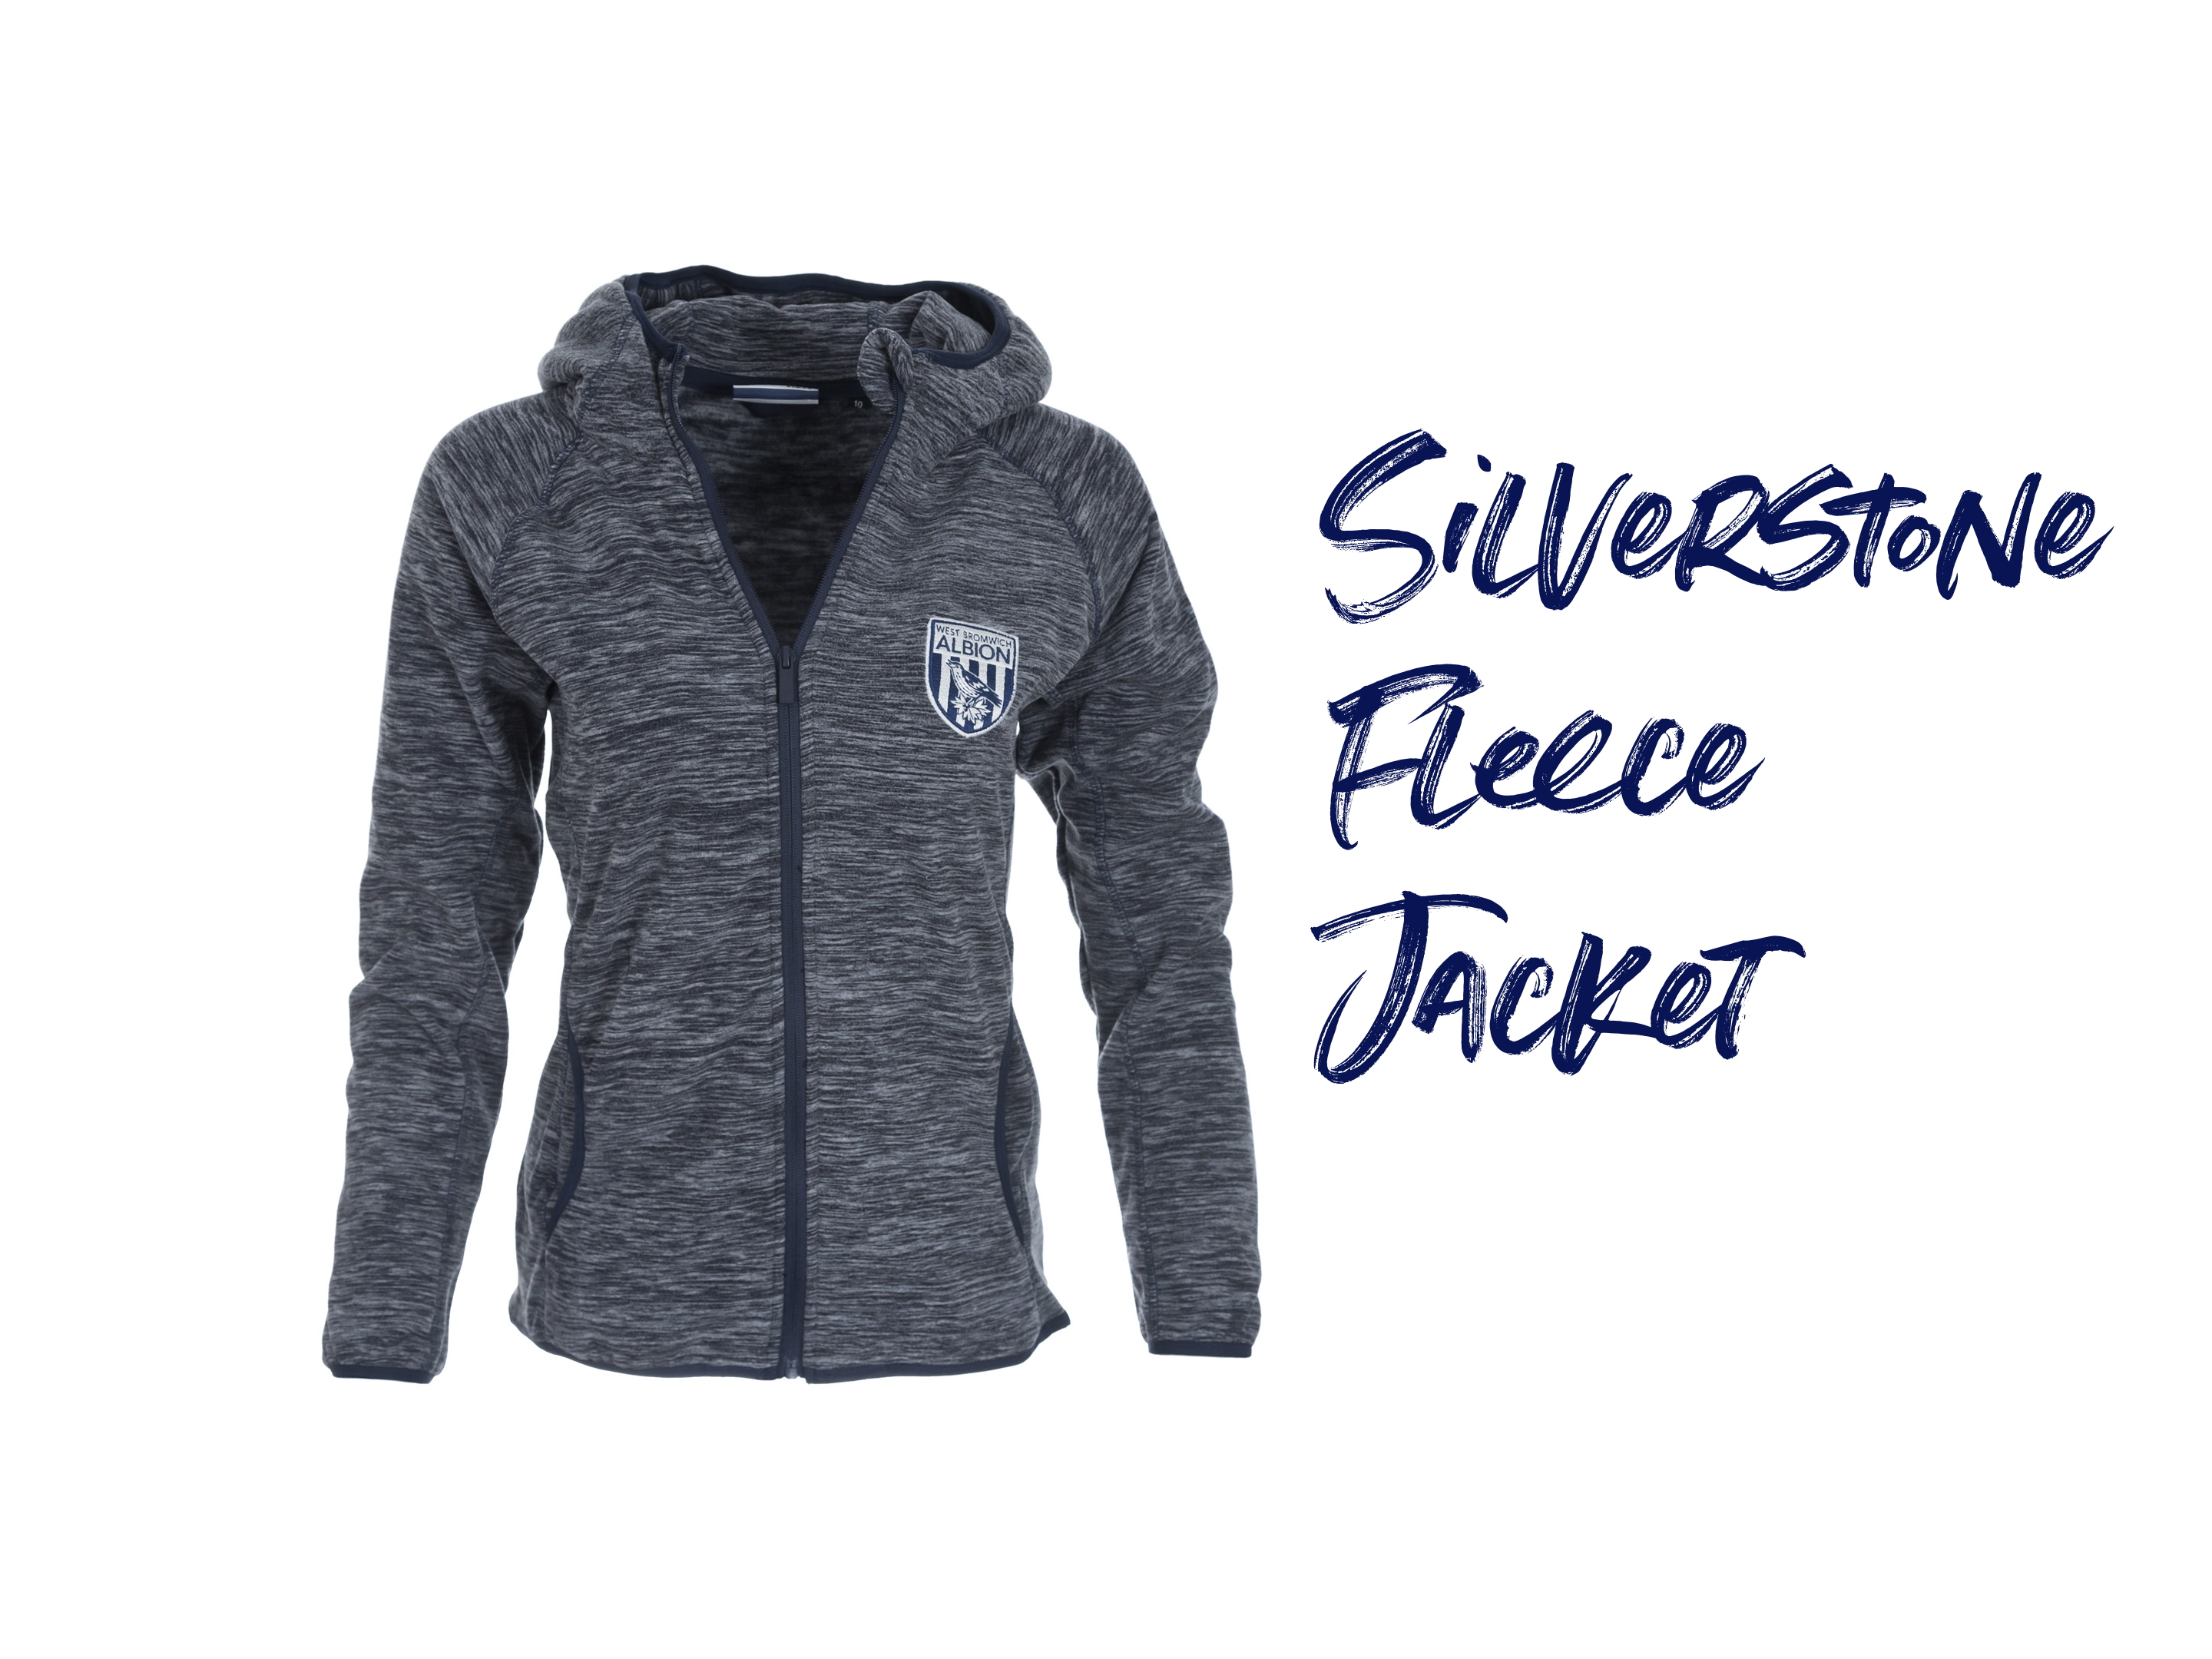 Silverstone Fleece Jacket